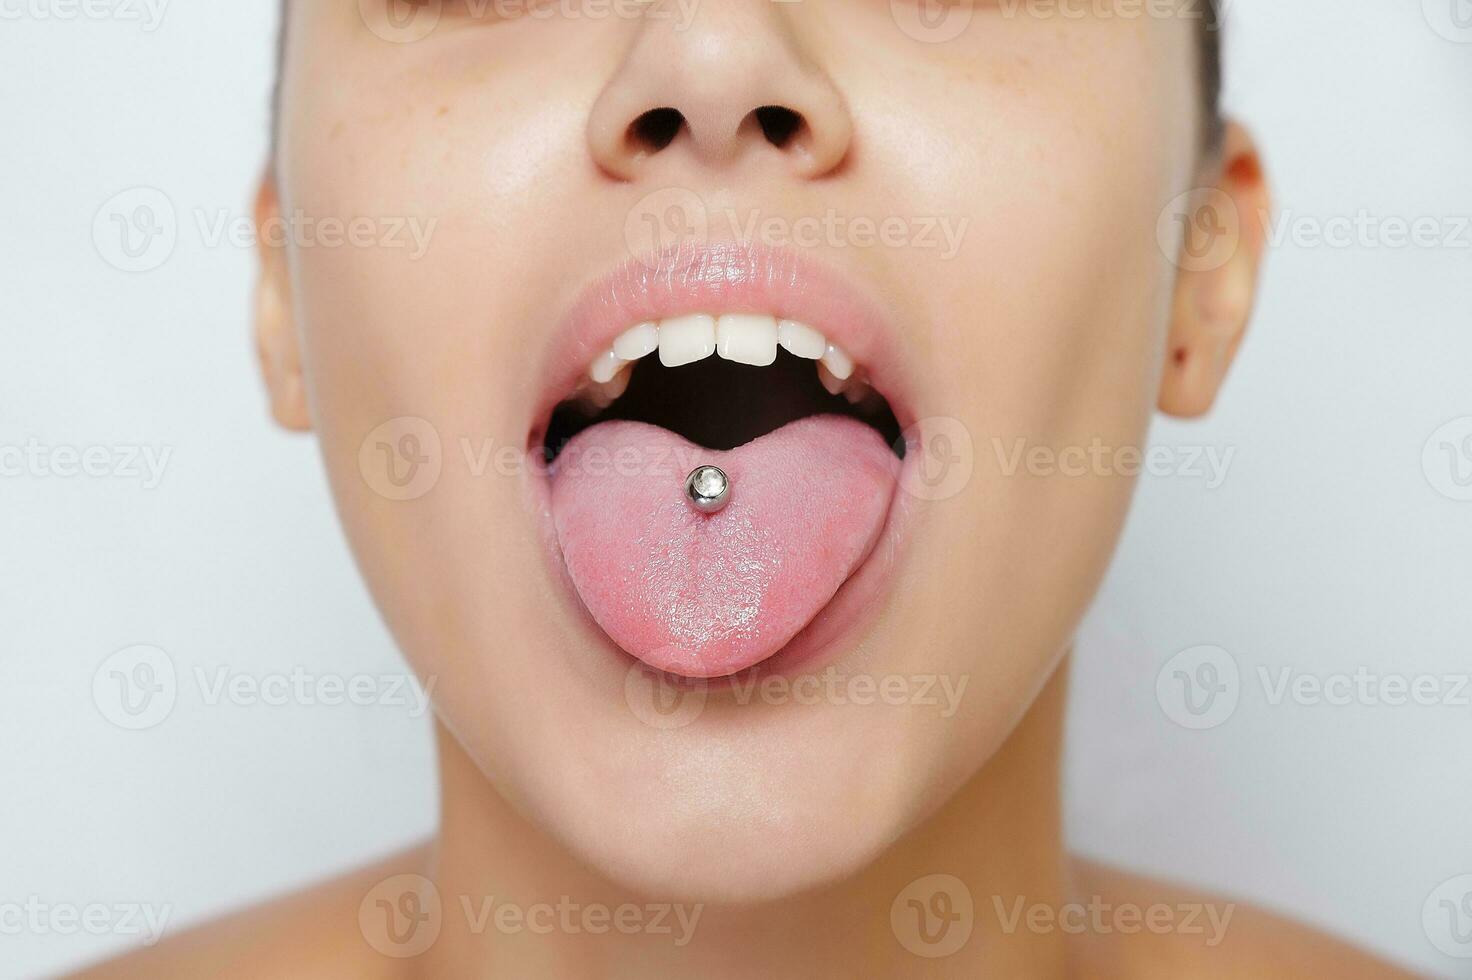 mooie vrouw steekt haar tong uit en toont jonge piercing foto